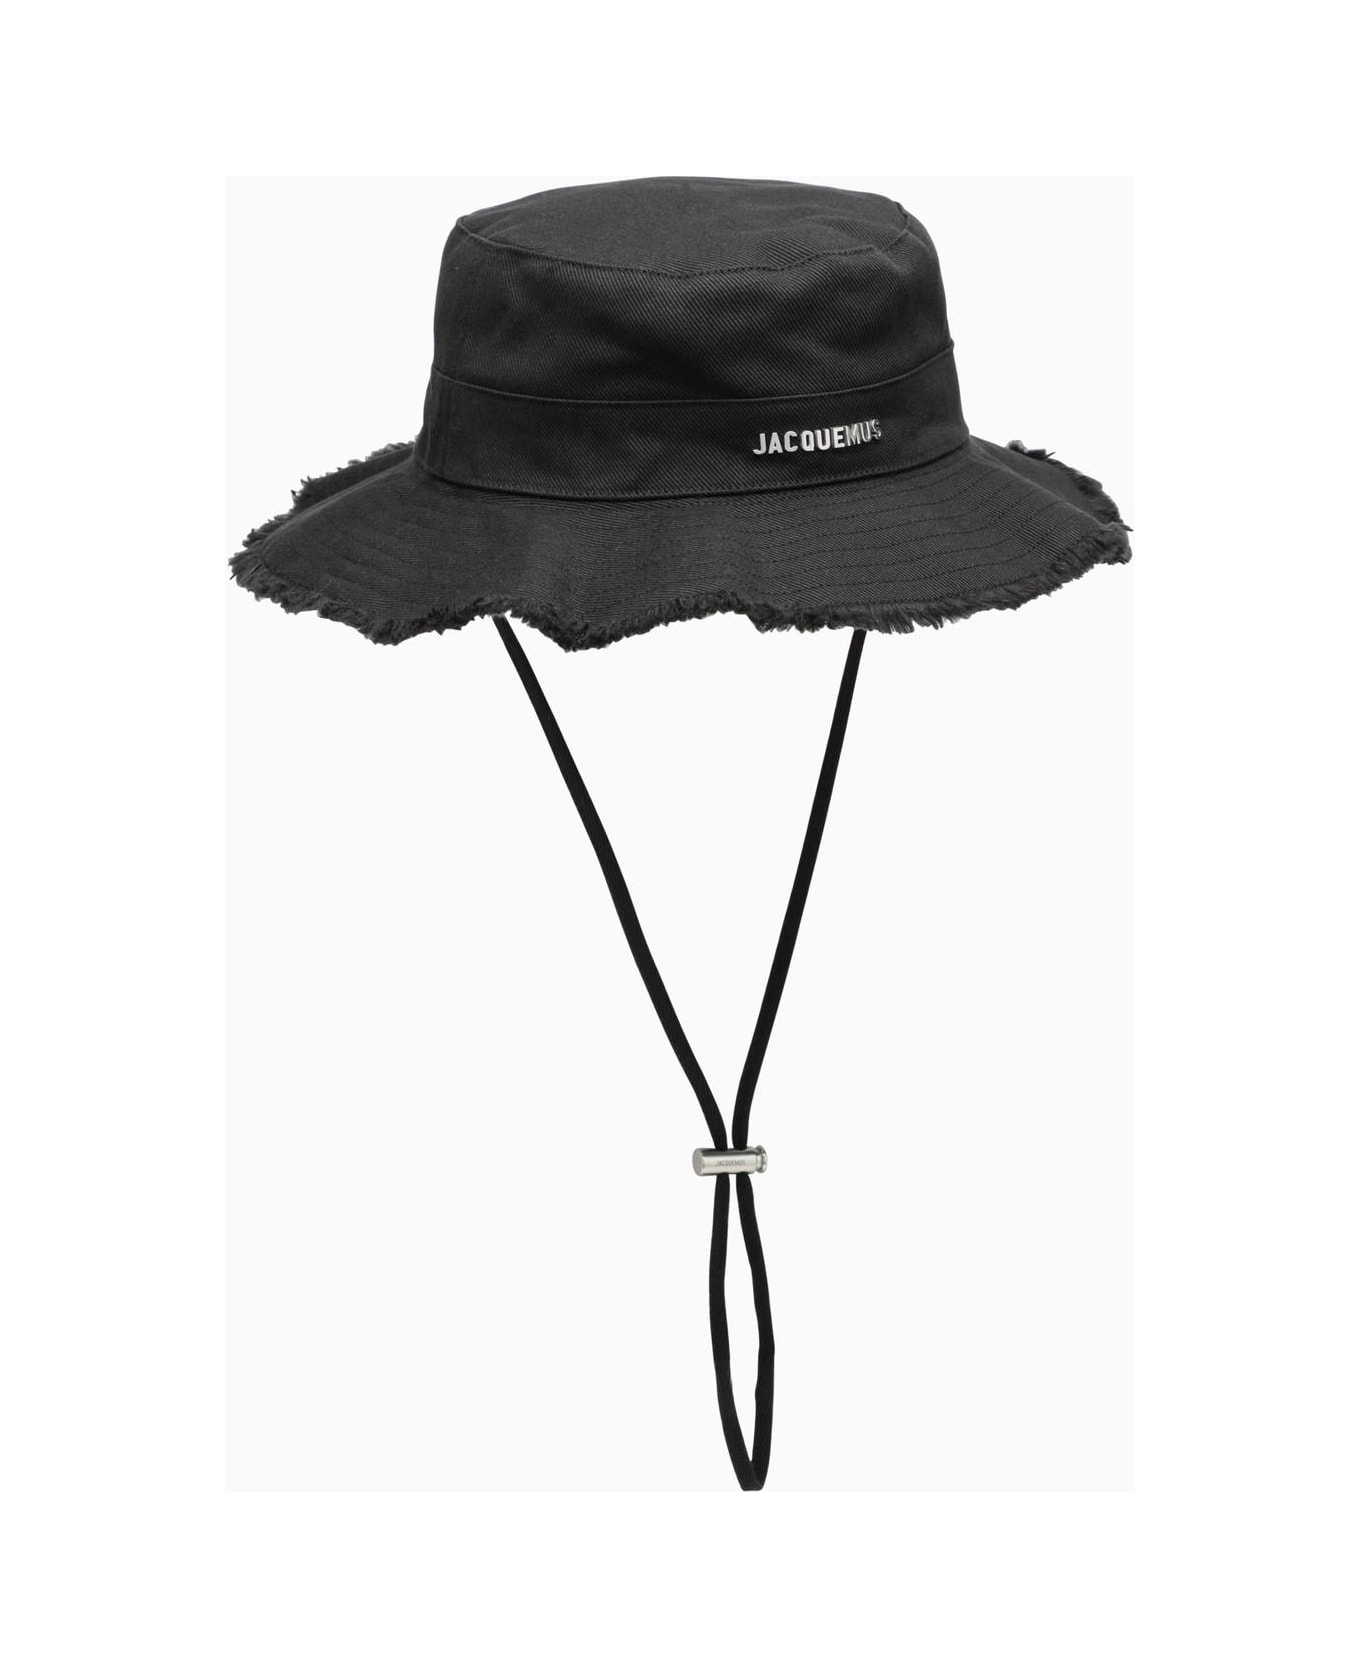 Jacquemus Le Bob Artichaut Black Cotton Hat - 990 black 帽子